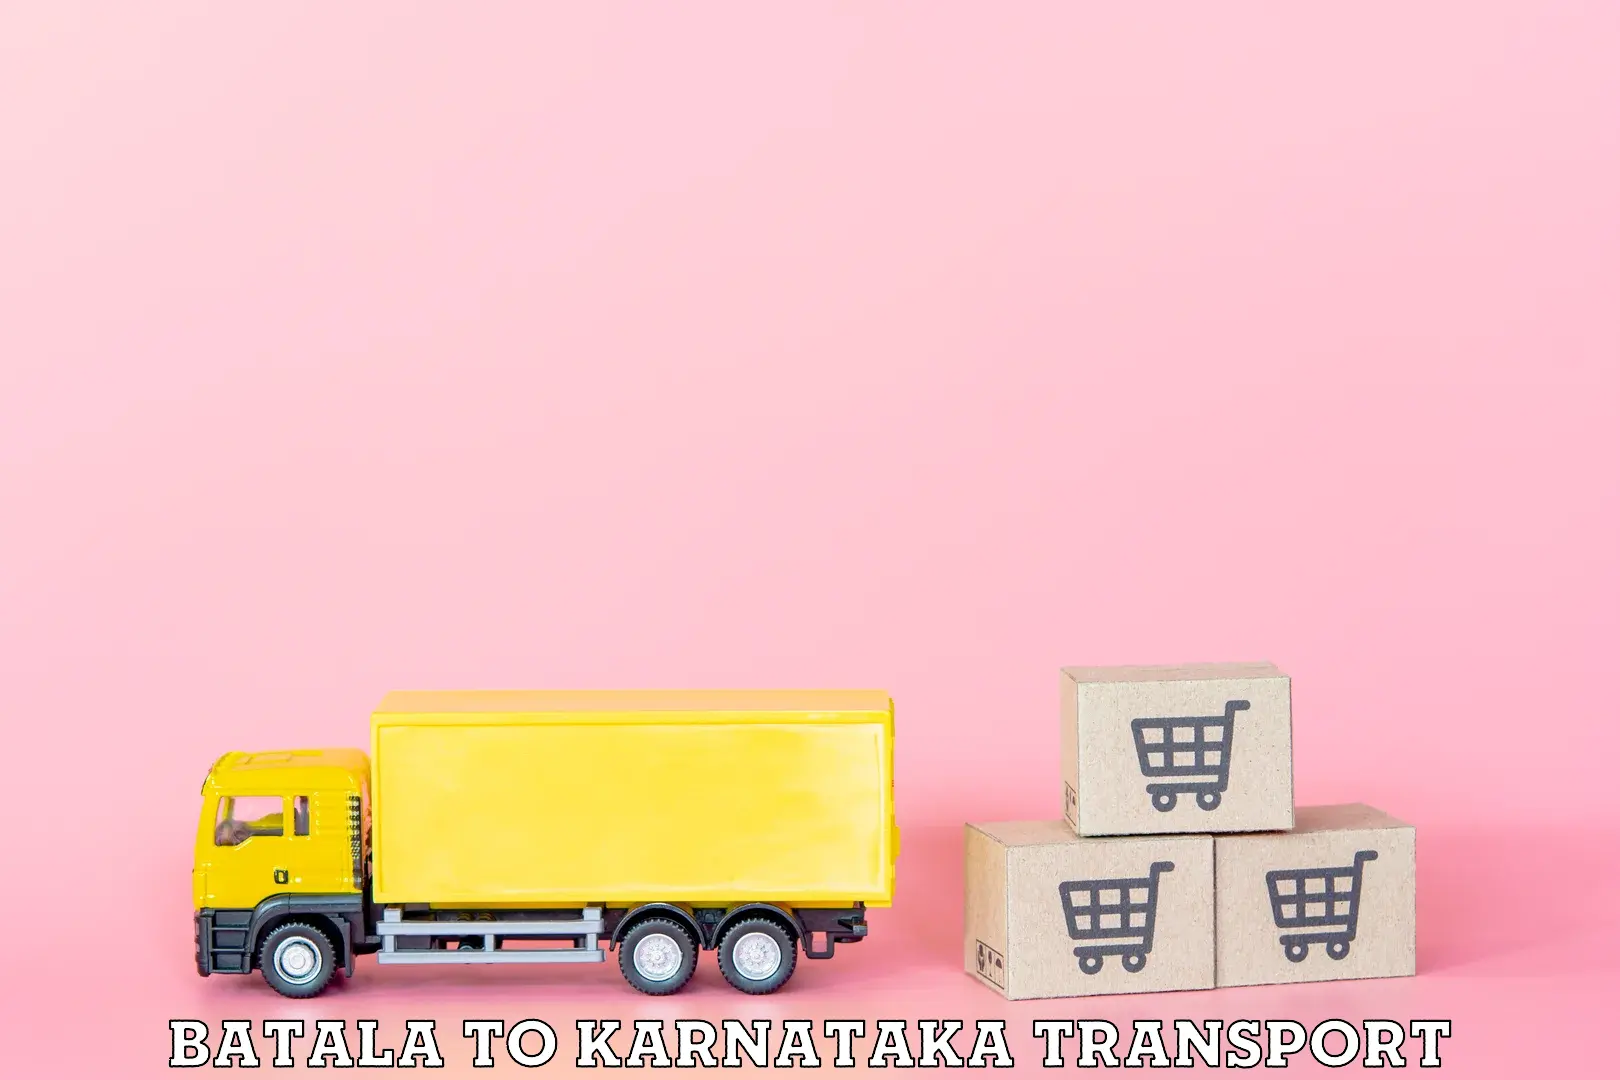 Nearest transport service Batala to Navalgund